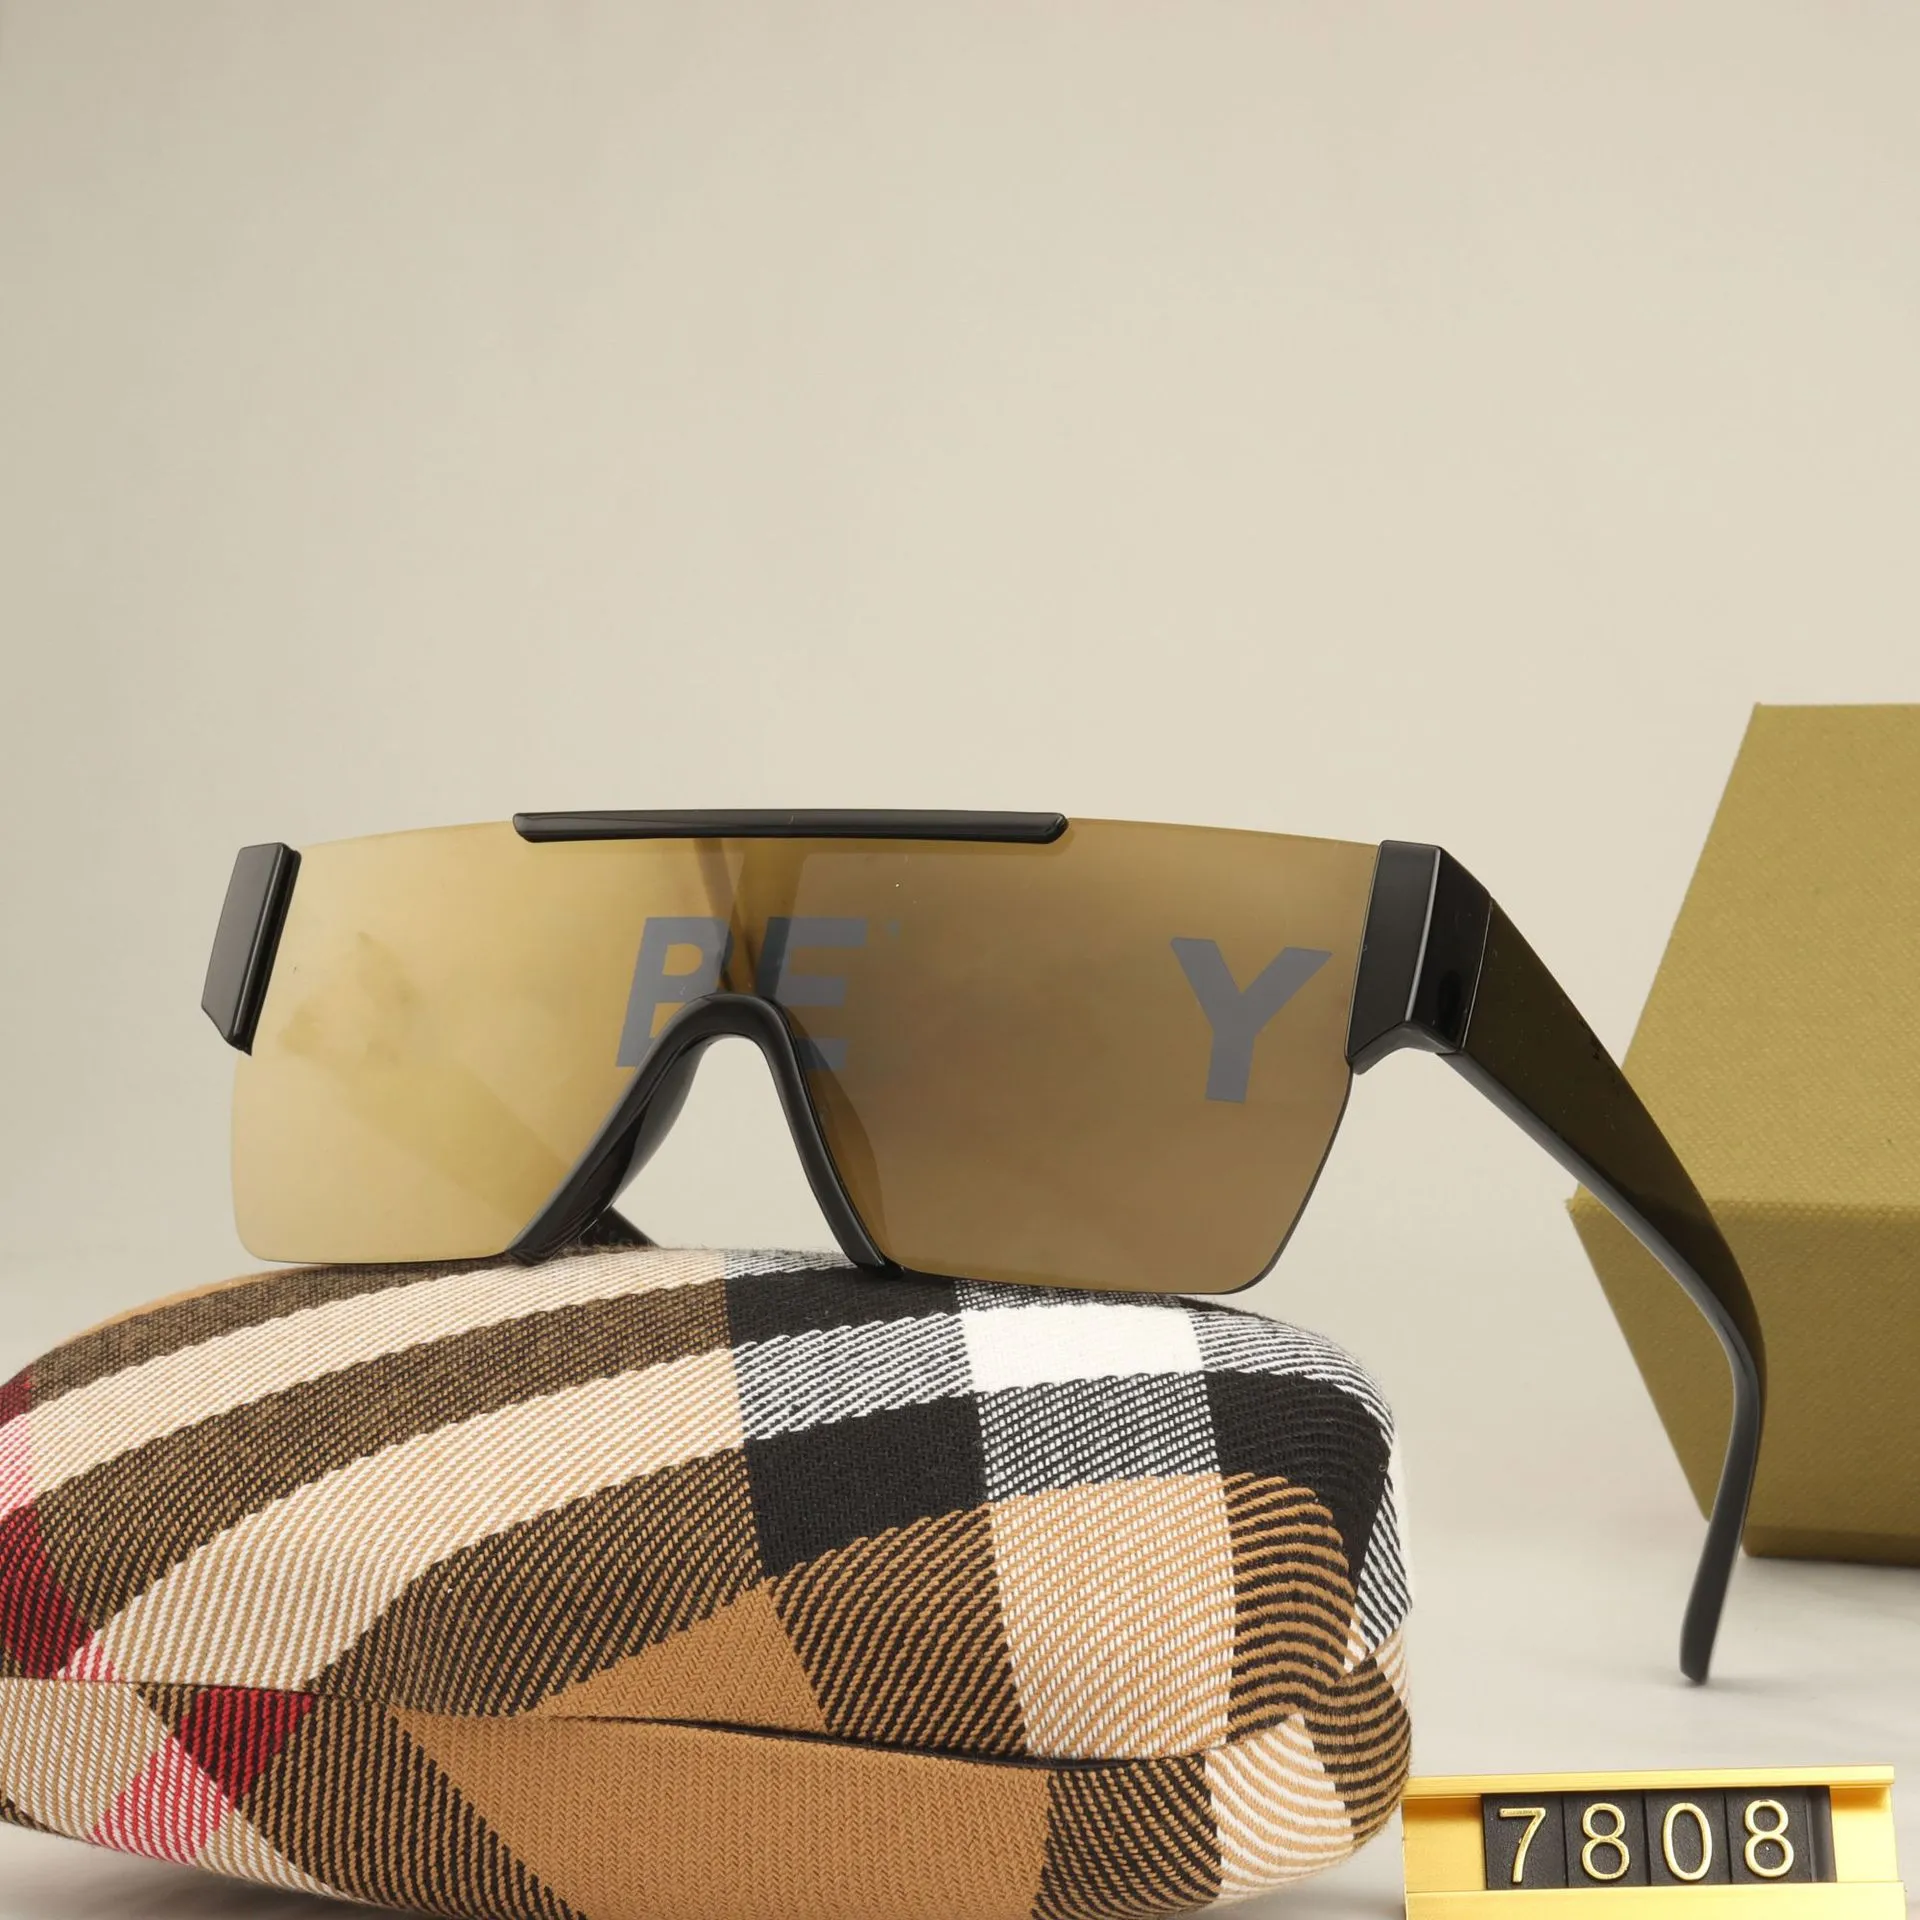 Óculos de sol designers Moda de luxo Óculos de sol para mulheres e homens Lentes de uma peça Sombro de praia Proteção UV Vicos polarizados Presente da moda com caixa muito legal